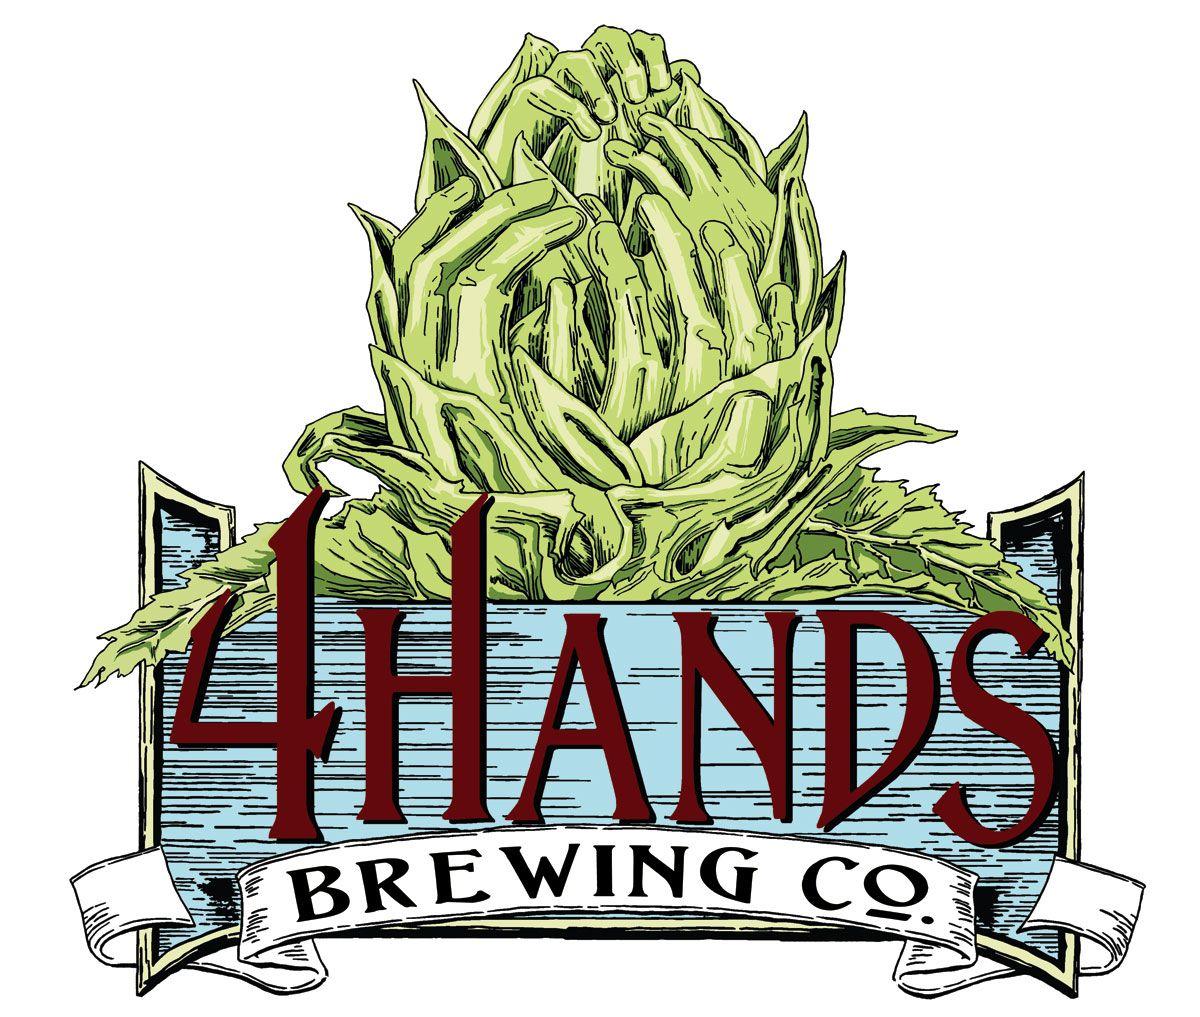 Four Hands Logo - Four hands Logos